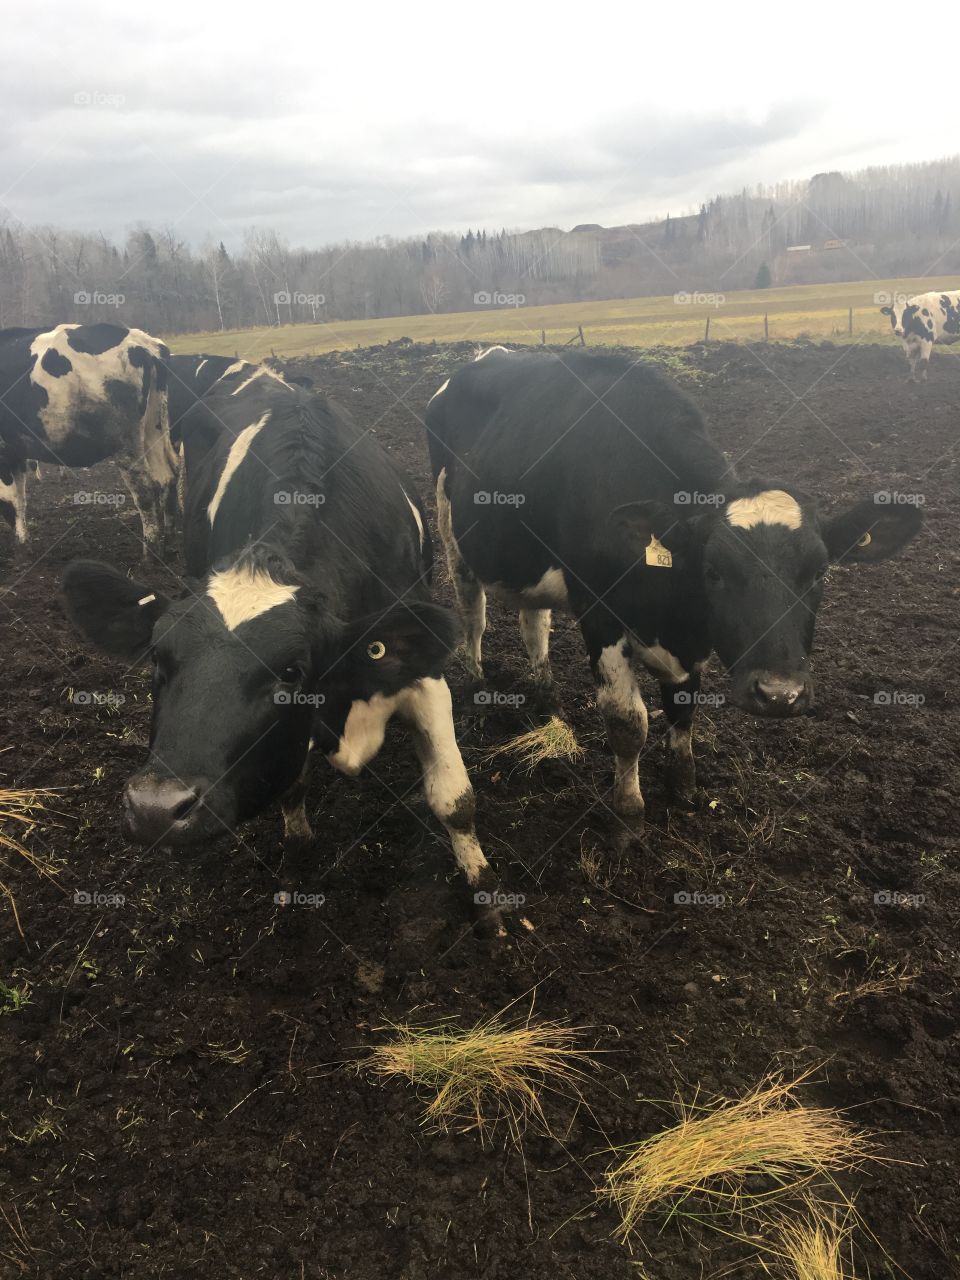 Ontario Dairy Farmers